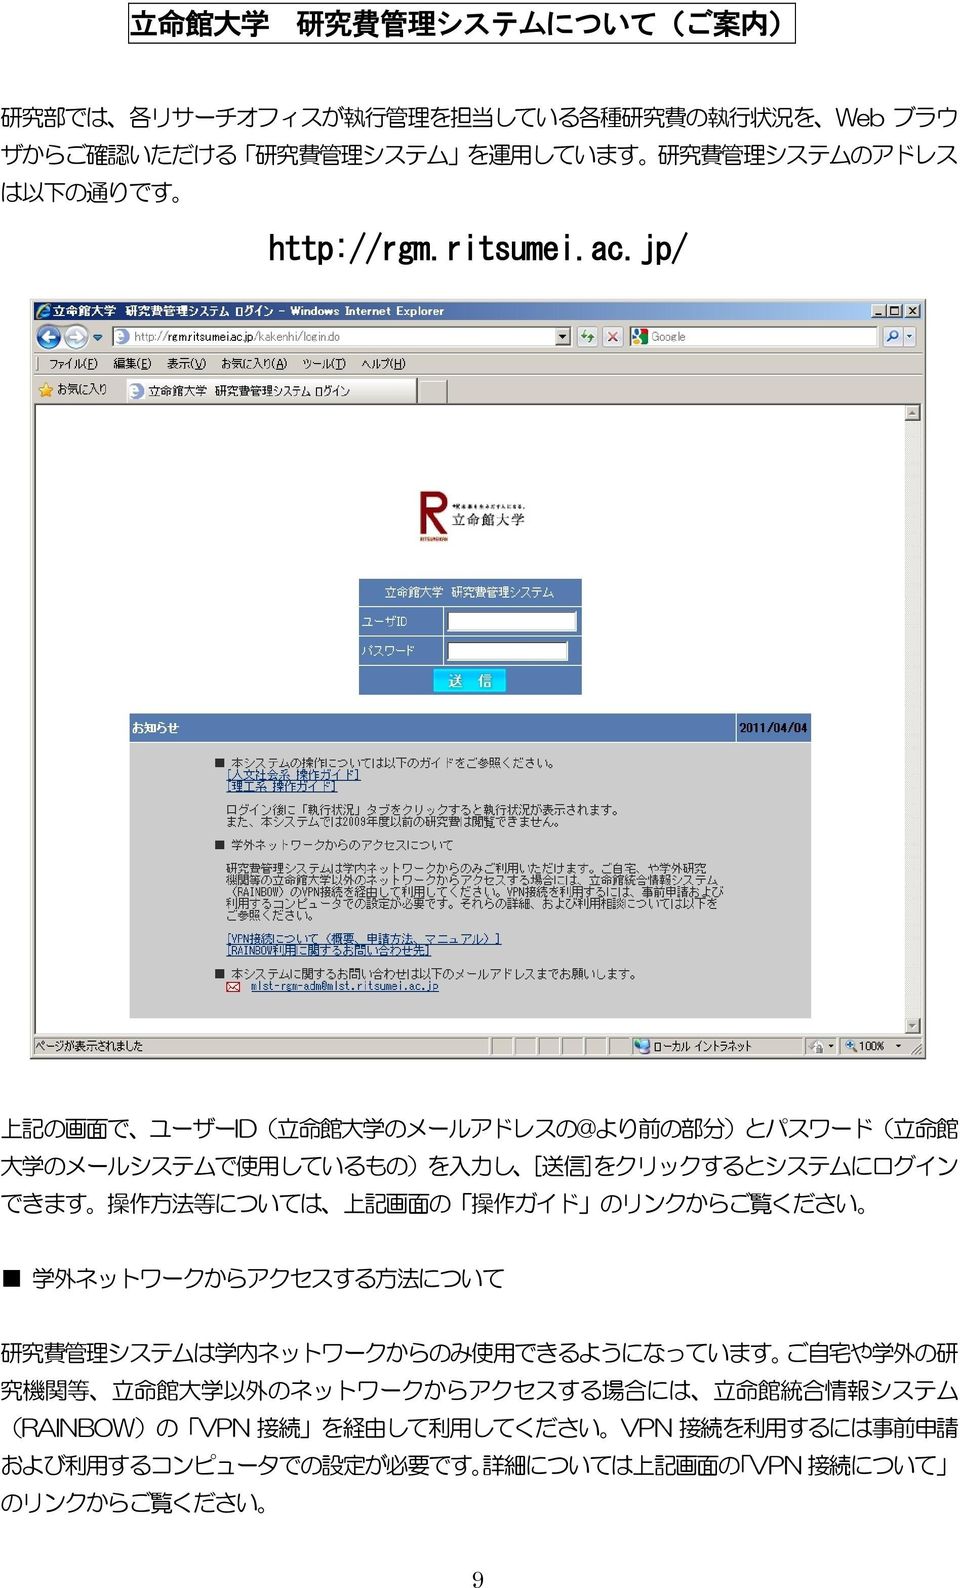 jp/ 上 記 の 画 面 で ユーザーID( 立 命 館 大 学 のメールアドレスの@より 前 の 部 分 )とパスワード( 立 命 館 大 学 のメールシステムで 使 用 しているもの)を 入 力 し [ 送 信 ]をクリックするとシステムにログイン できます 操 作 方 法 等 については 上 記 画 面 の 操 作 ガイド